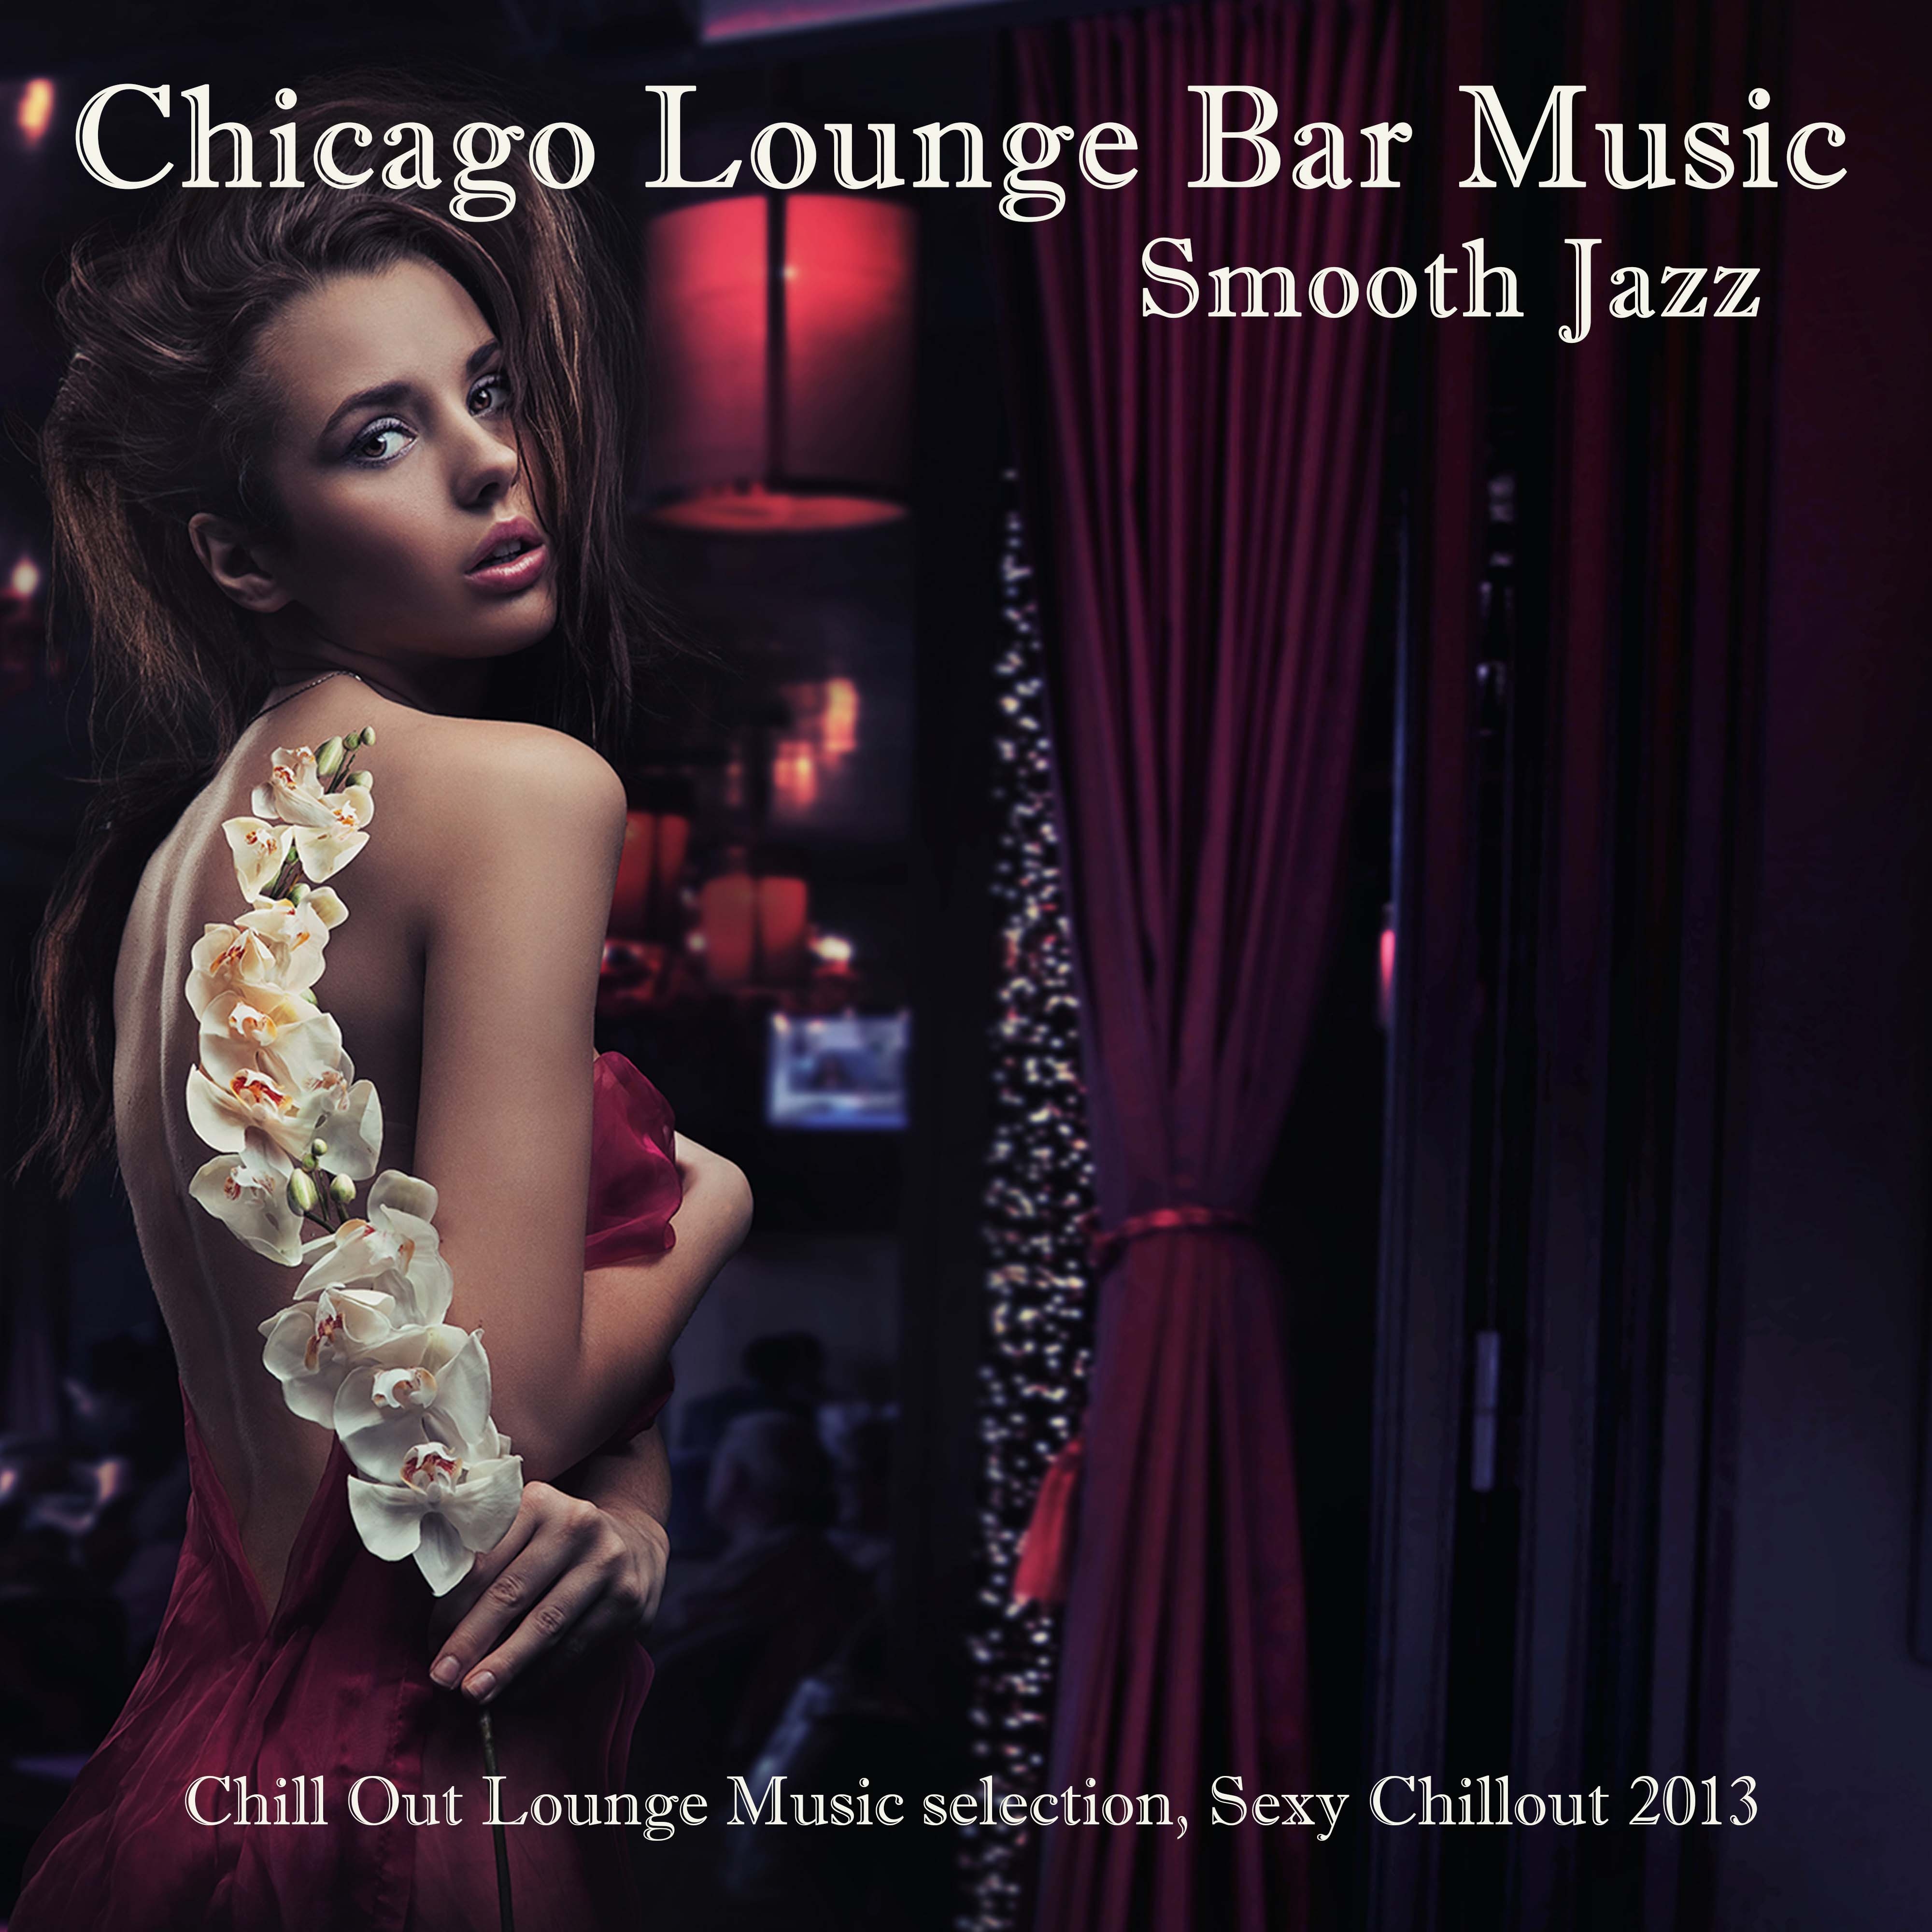 Chicago Smooth Jazz Lounge Bar Music: Erotic Chill Jazz (Chill Out Lounge Music selection, **** Chillout 2013)